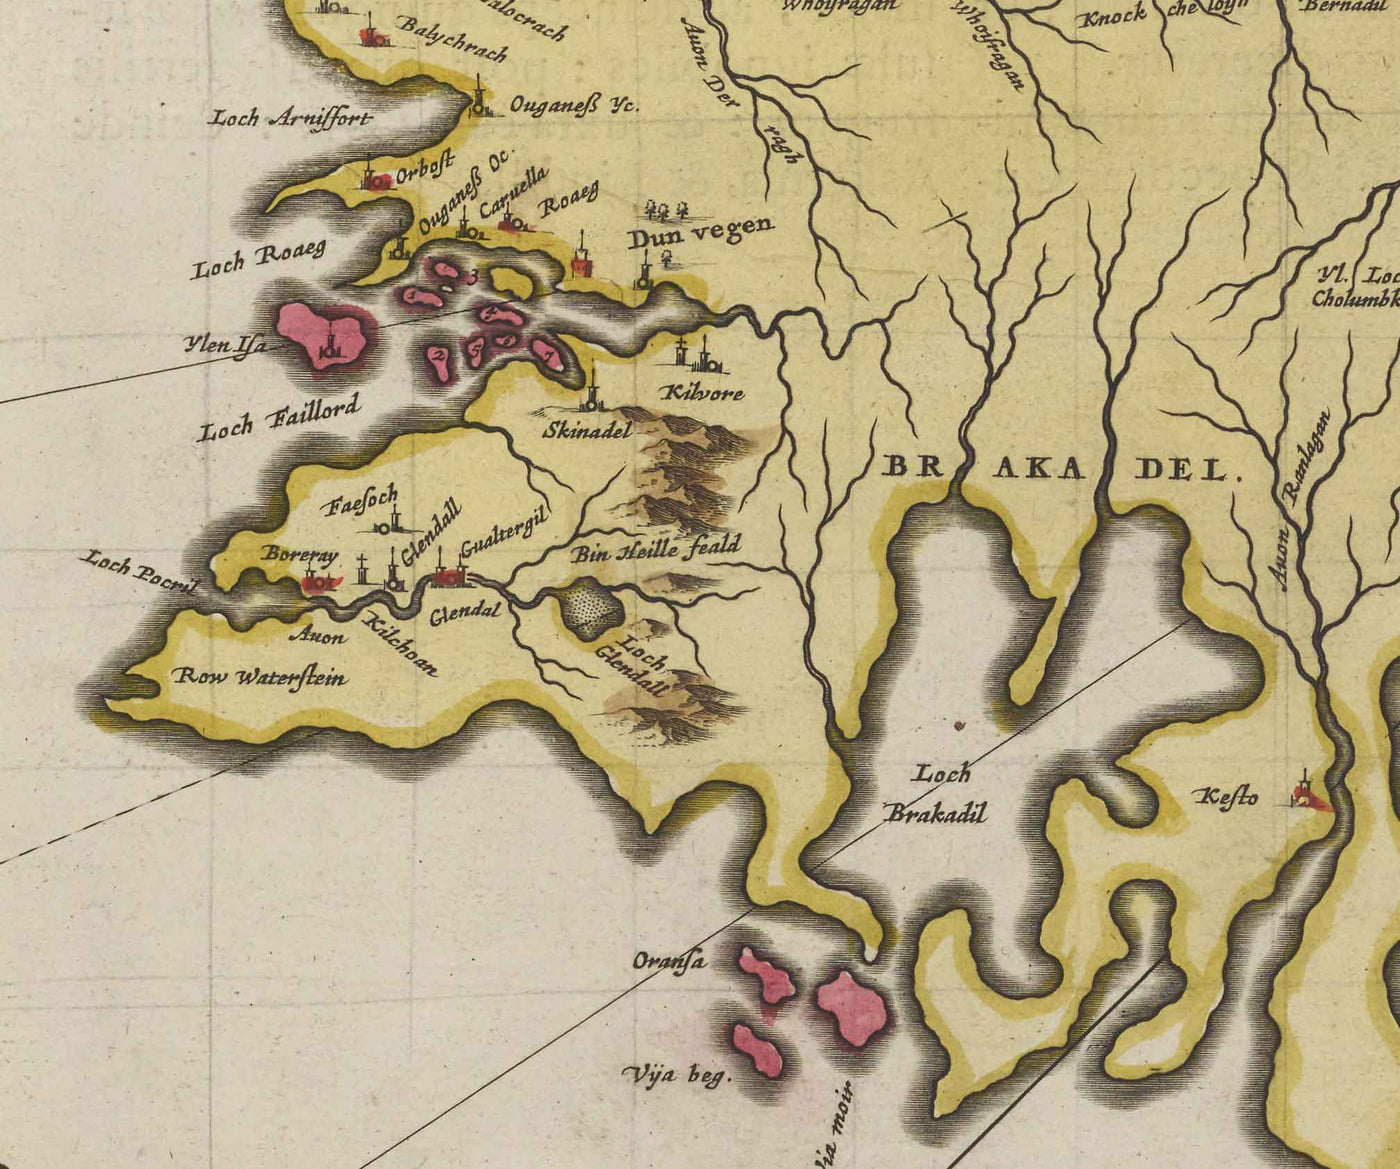 Antiguo mapa de la isla de Skye en 1665 por Joan Blaeu - Portree, Raasay, Soay, Scalpay, Dunvegan